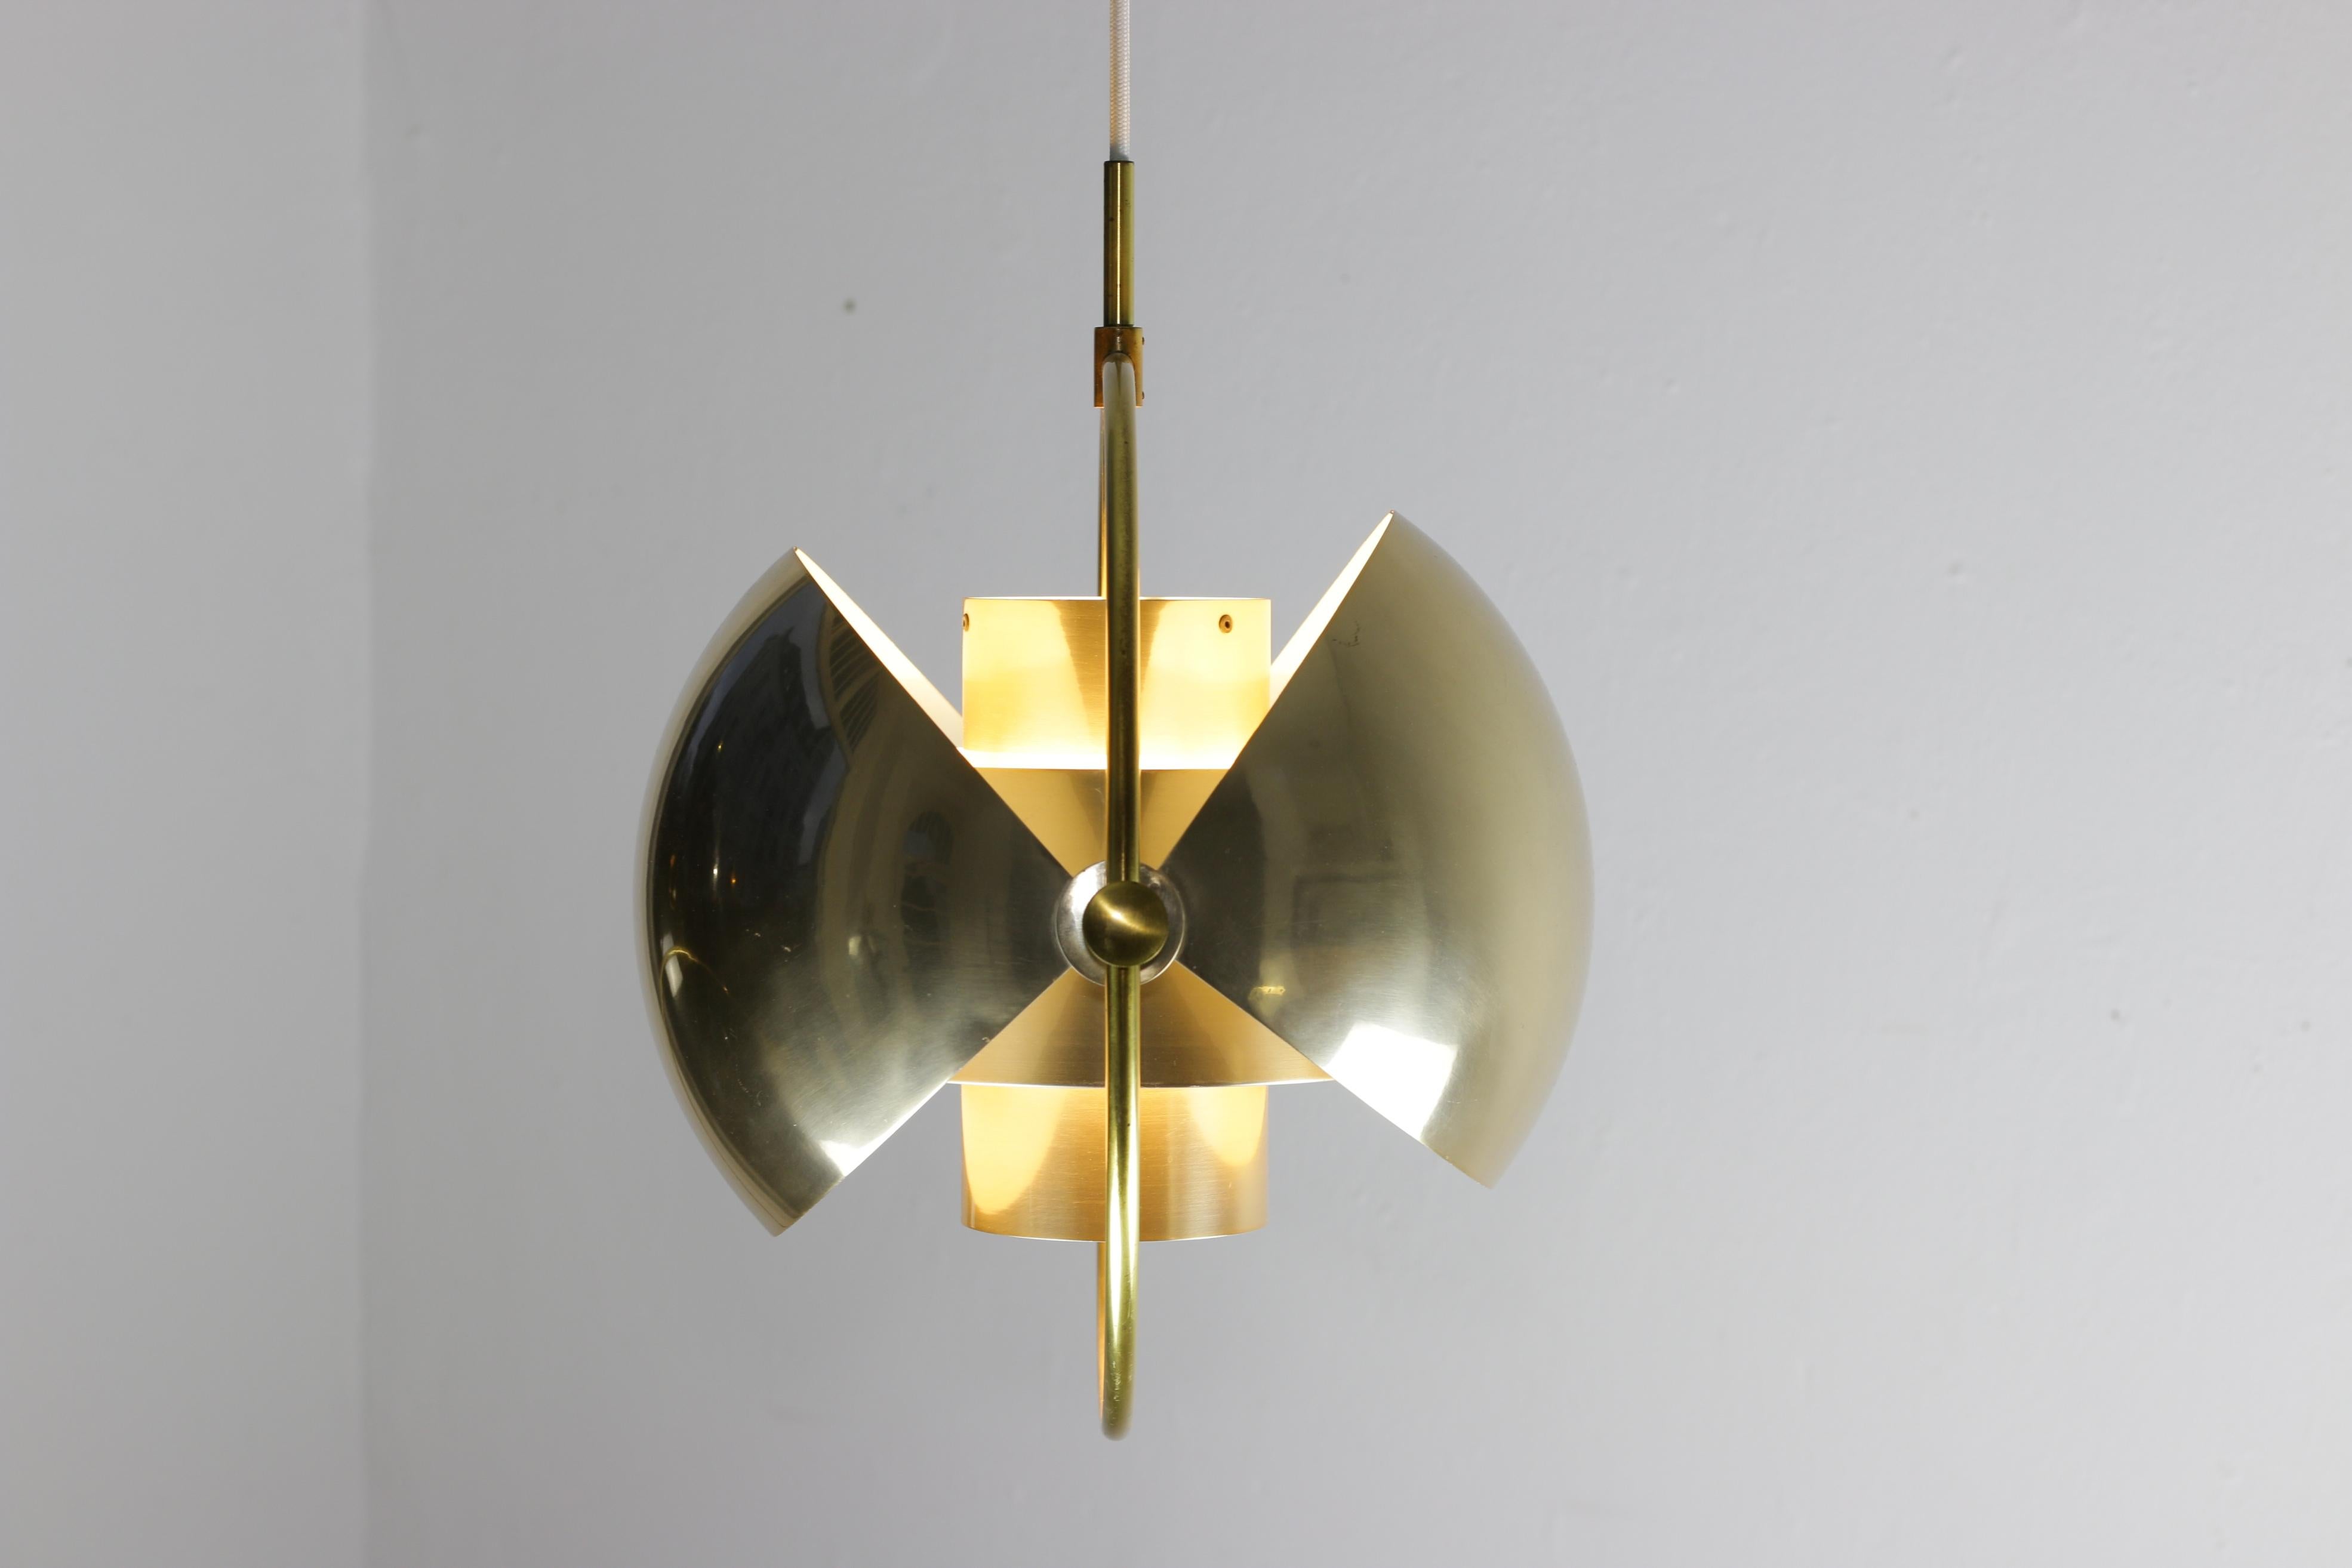 L'original Multi- Lite vintage a été conçu par Louis Weisdorf pour le fabricant danois de lampes Lyfa en 1972.

Cette lampe possède deux abat-jour en forme de quart de sphère qui sont mobiles dans chaque position potentielle.
Les moitiés